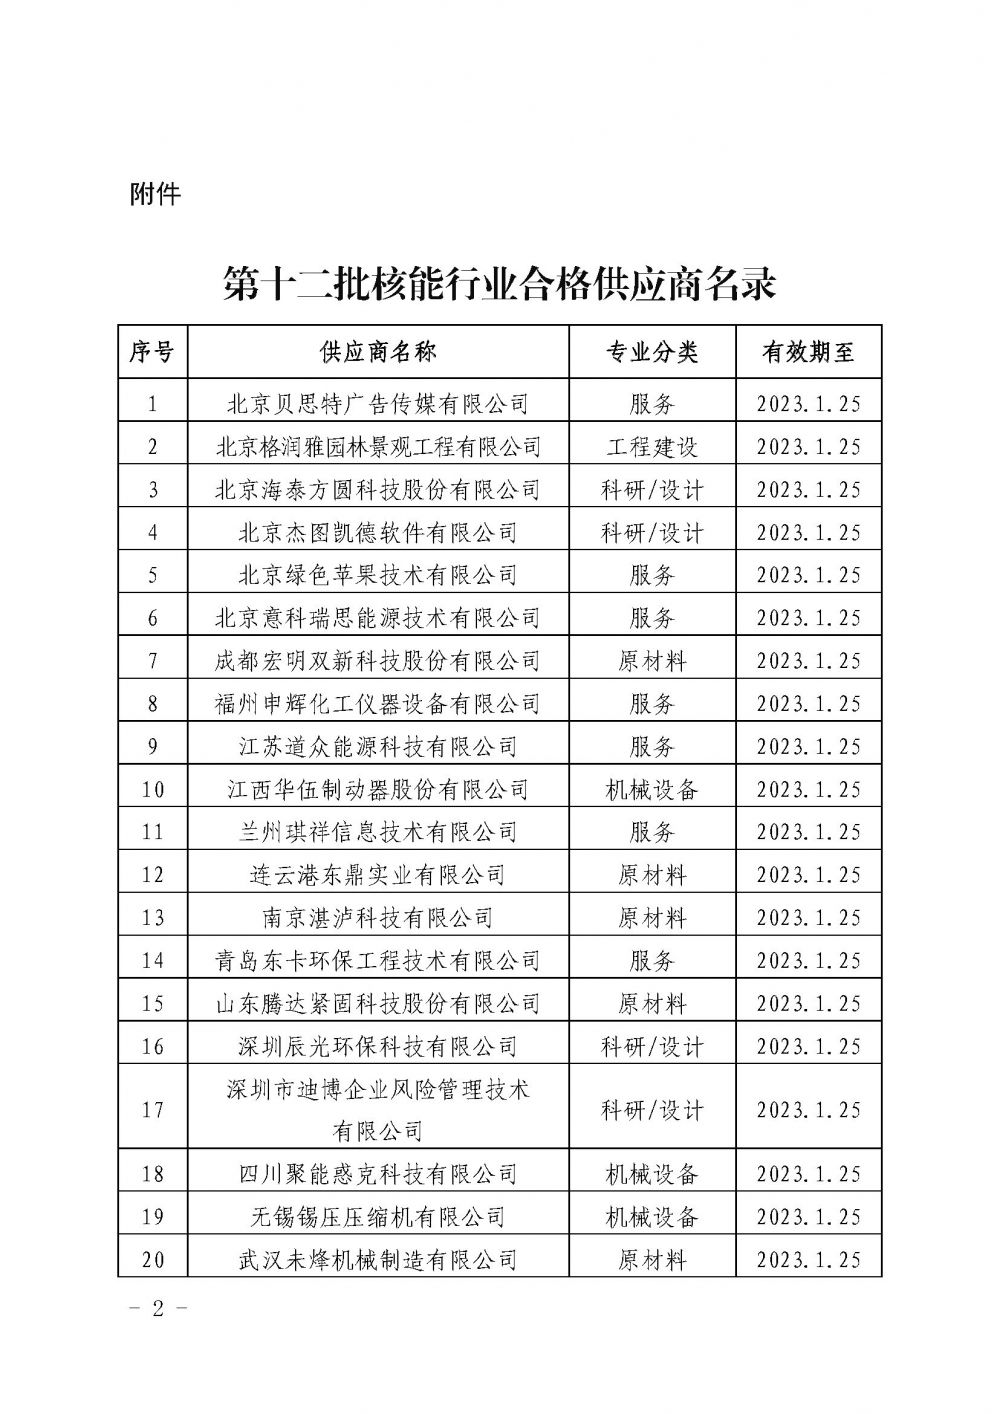 关于发布中国核能行业协会核能行业第十二批合格供应商名录的公告_页面_2.jpg